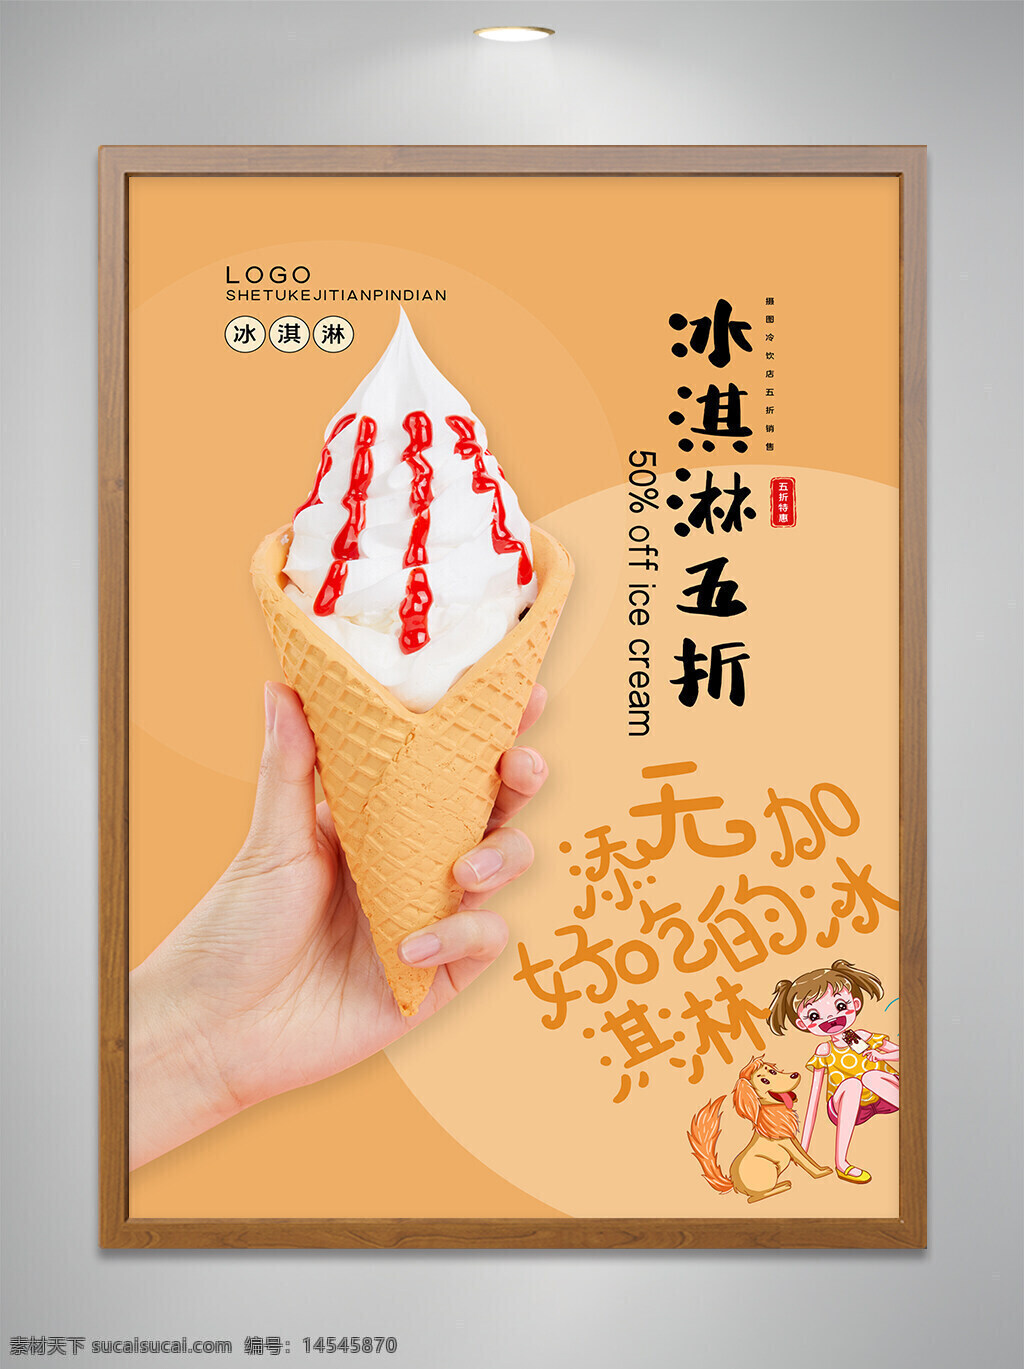 冰淇淋 五折 美食 宣传 设计 海报 夏天 美食海报 冰激凌 折扣 优惠选宣传单